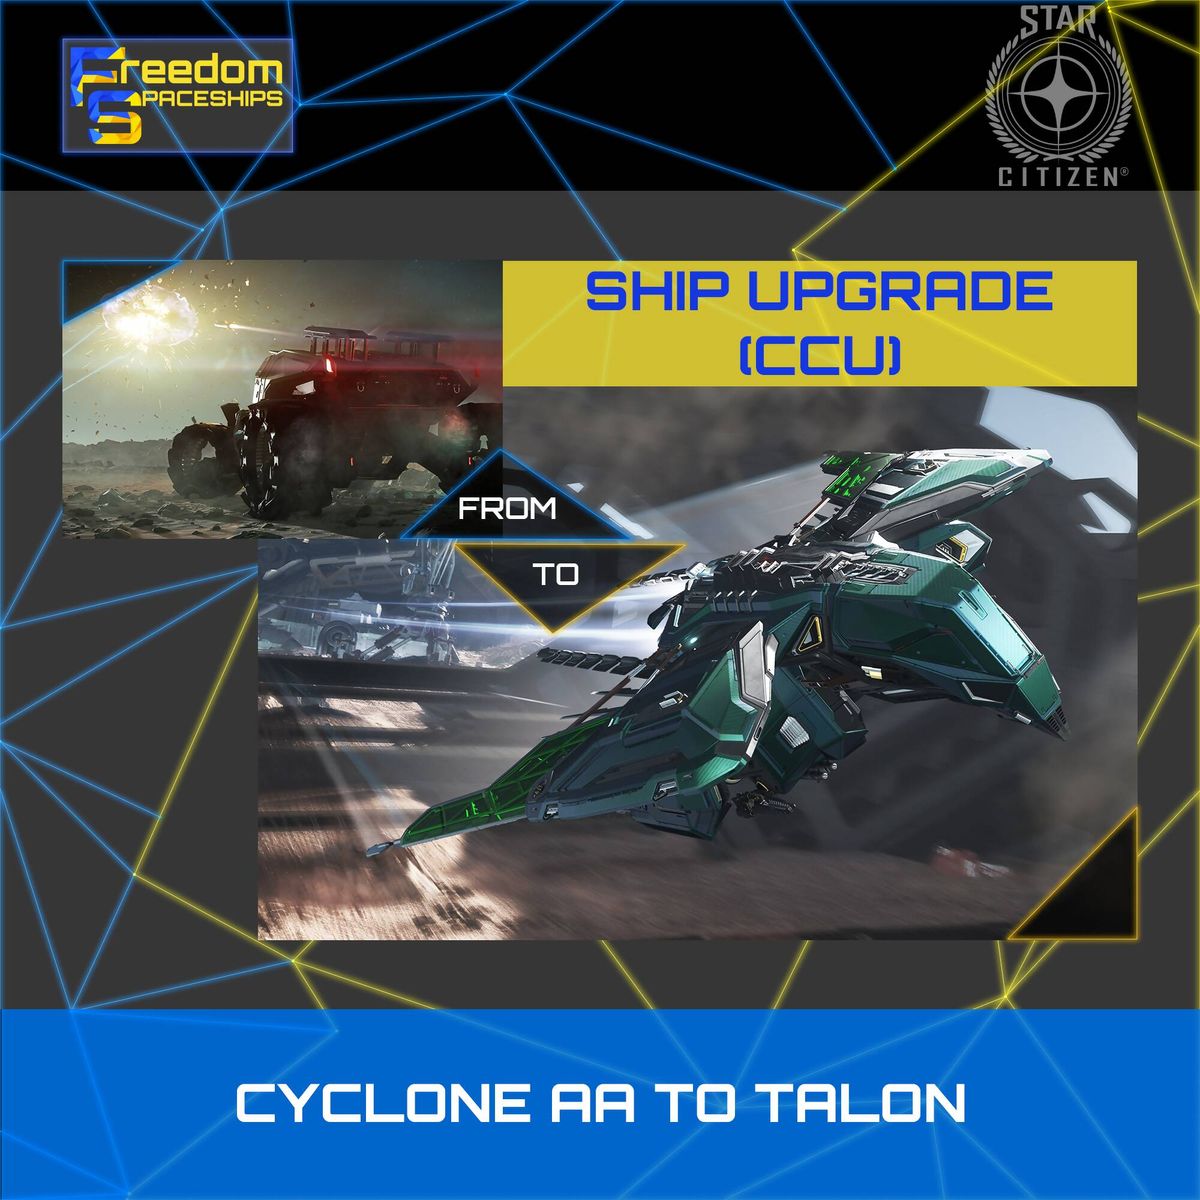 Upgrade - Cyclone AA to Talon